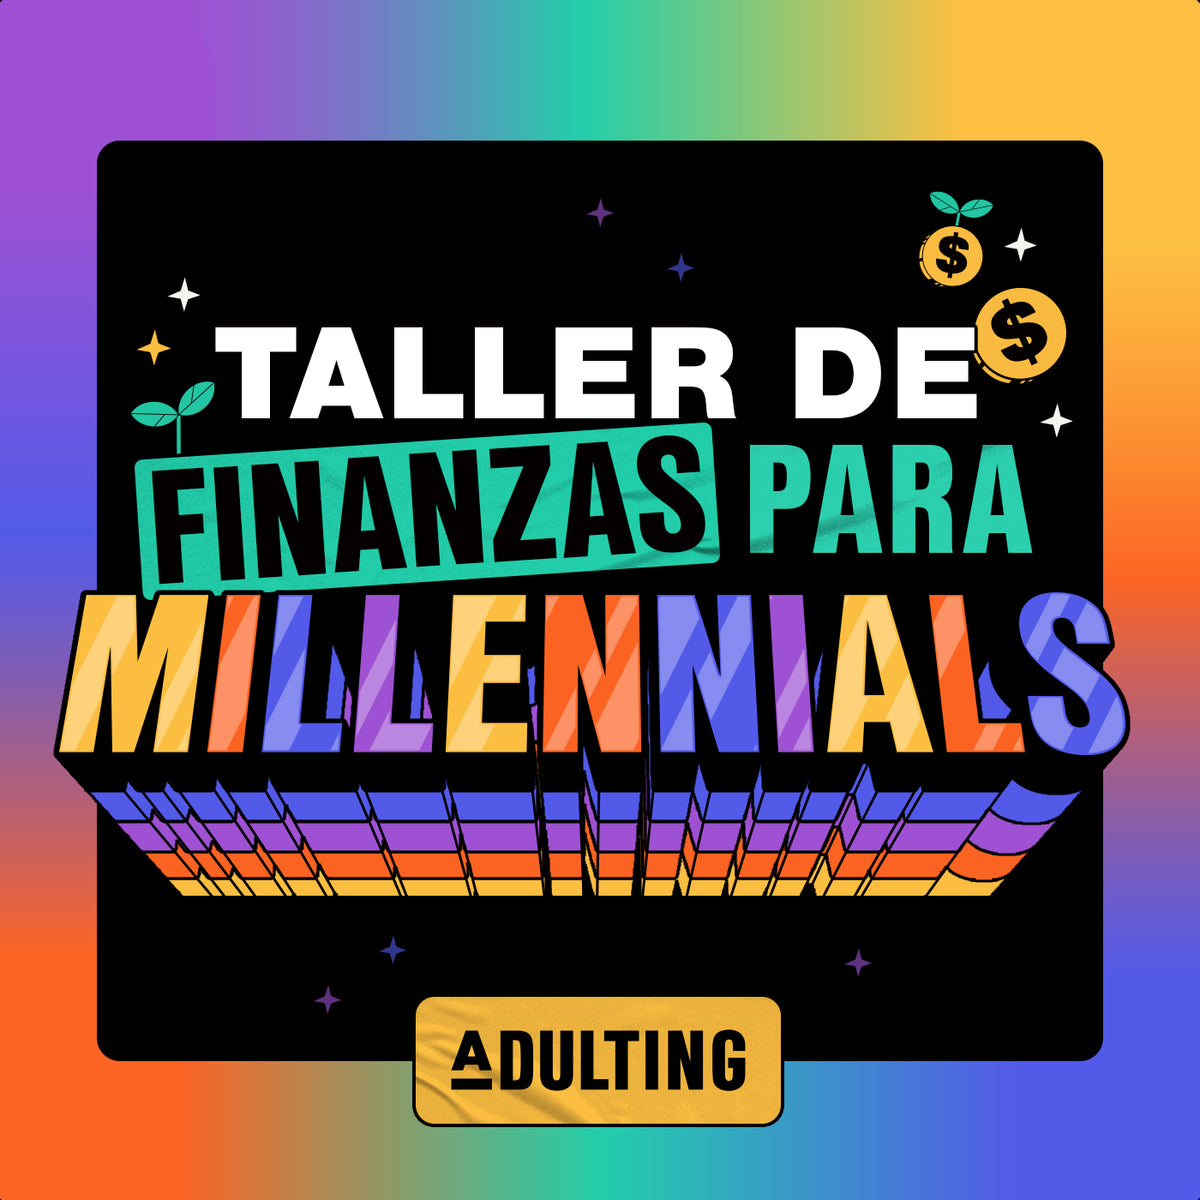 TALLER DE FINANZAS PARA MILLENNIALS 28 FEB